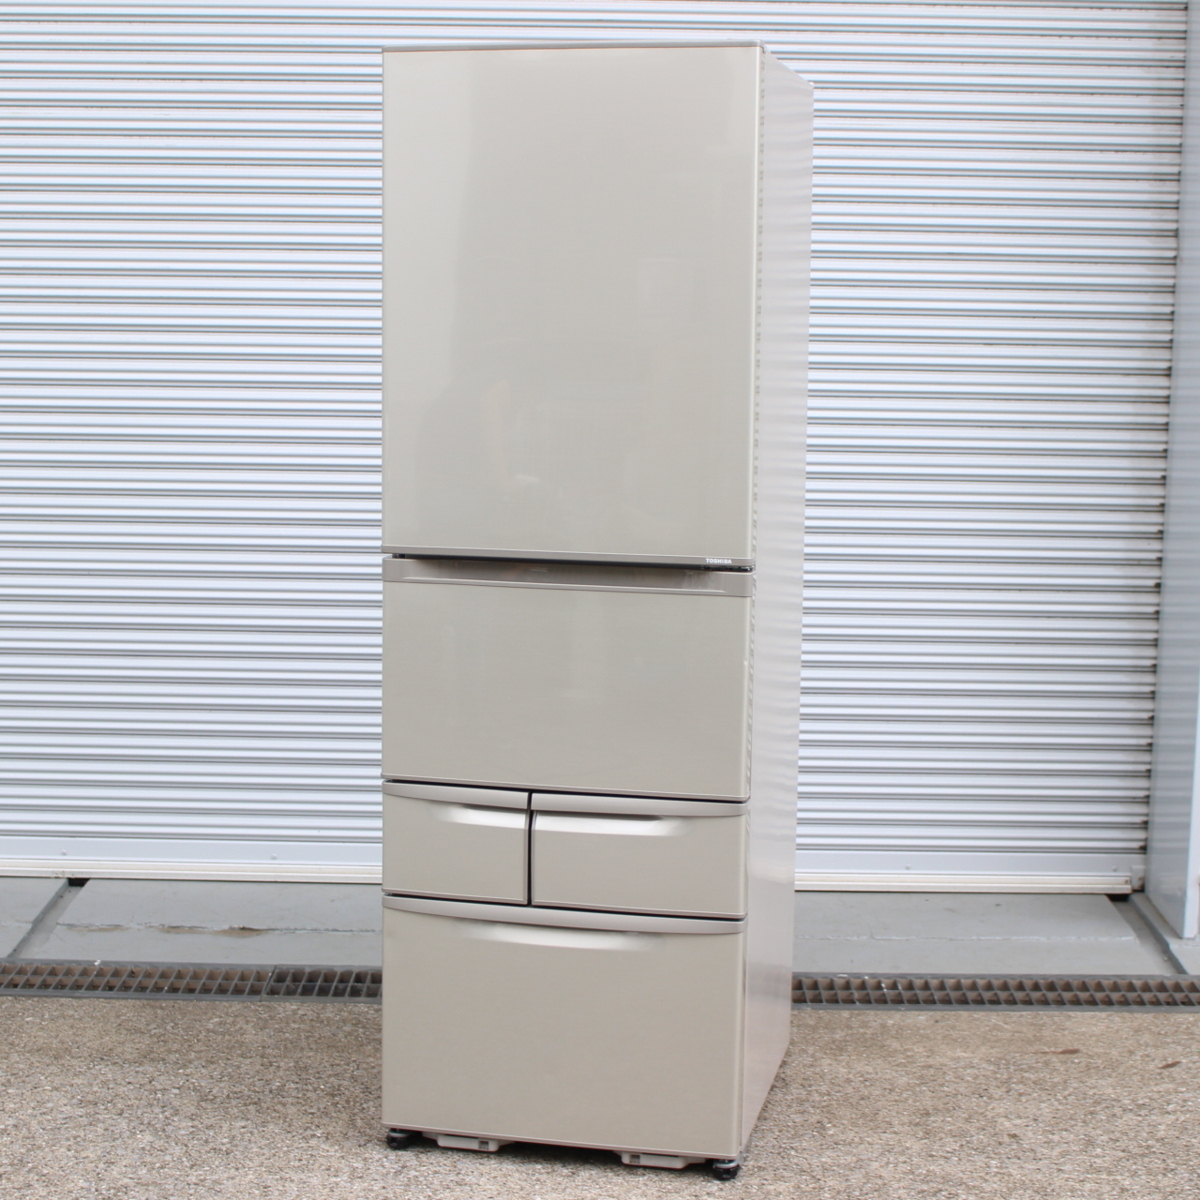 東芝 ノンフロン冷凍冷蔵庫 冷蔵庫 GR-E43N(NU) 5ドア 右開き 427L 2012年製 ブライトシャンパン